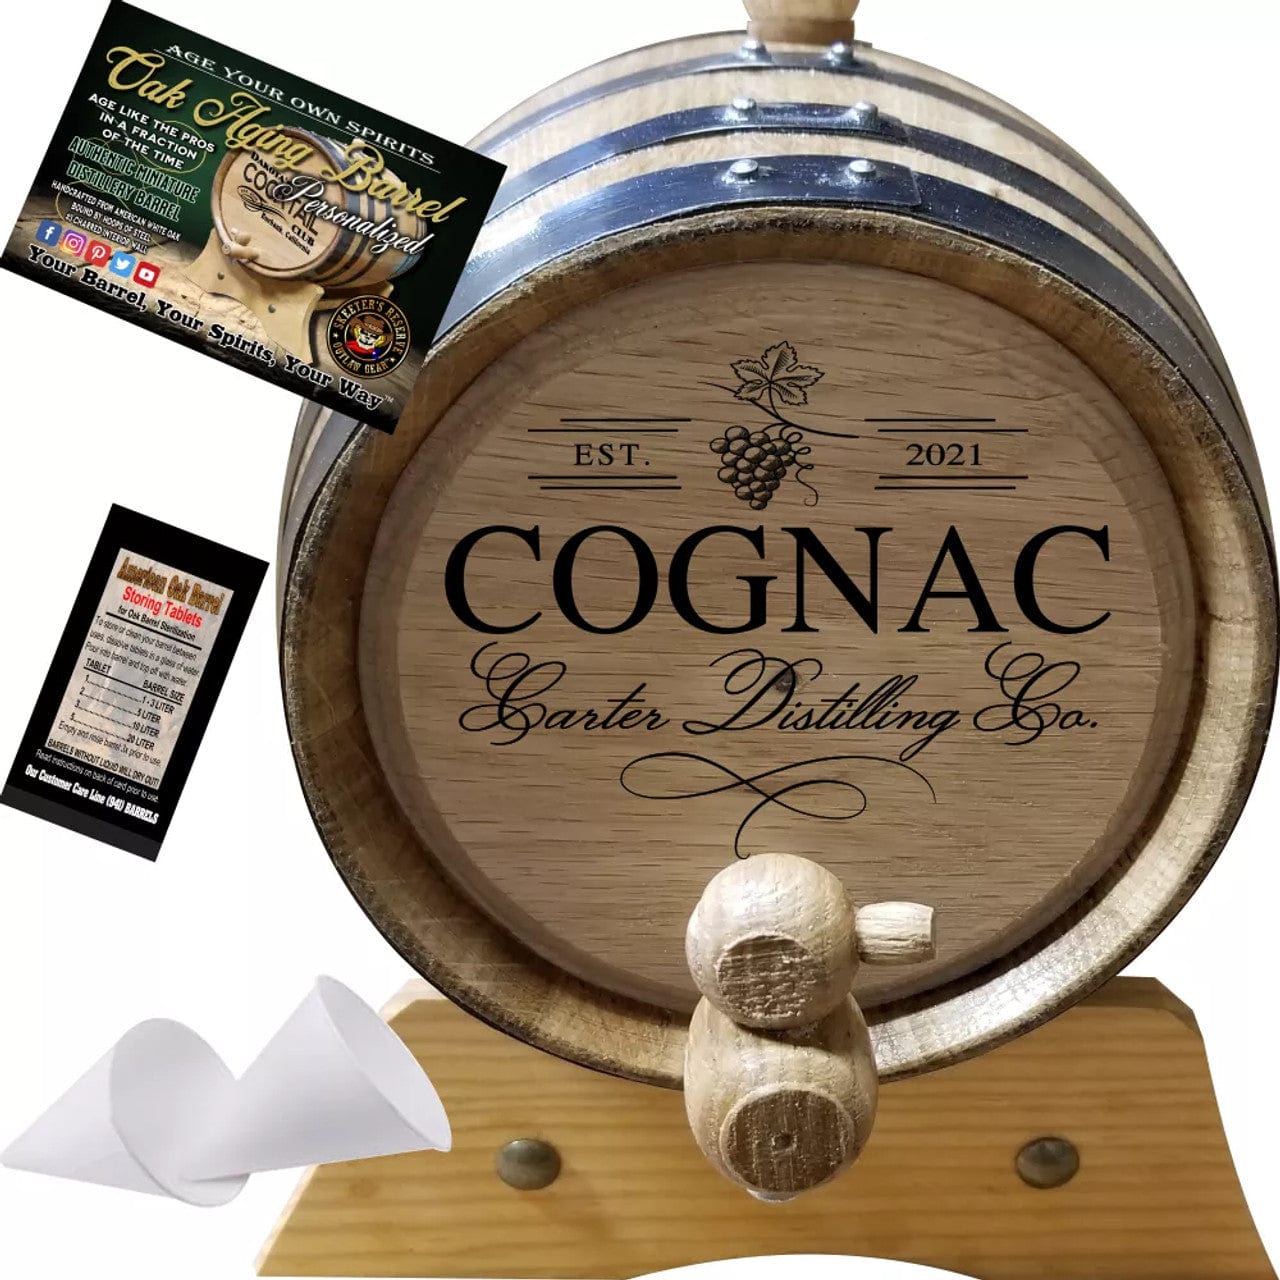 American Oak Barrel Engraved Barrels American Oak Barrel Your Cognac Distilling Co. (407) - Personalized American Oak Cognac Aging Barrel